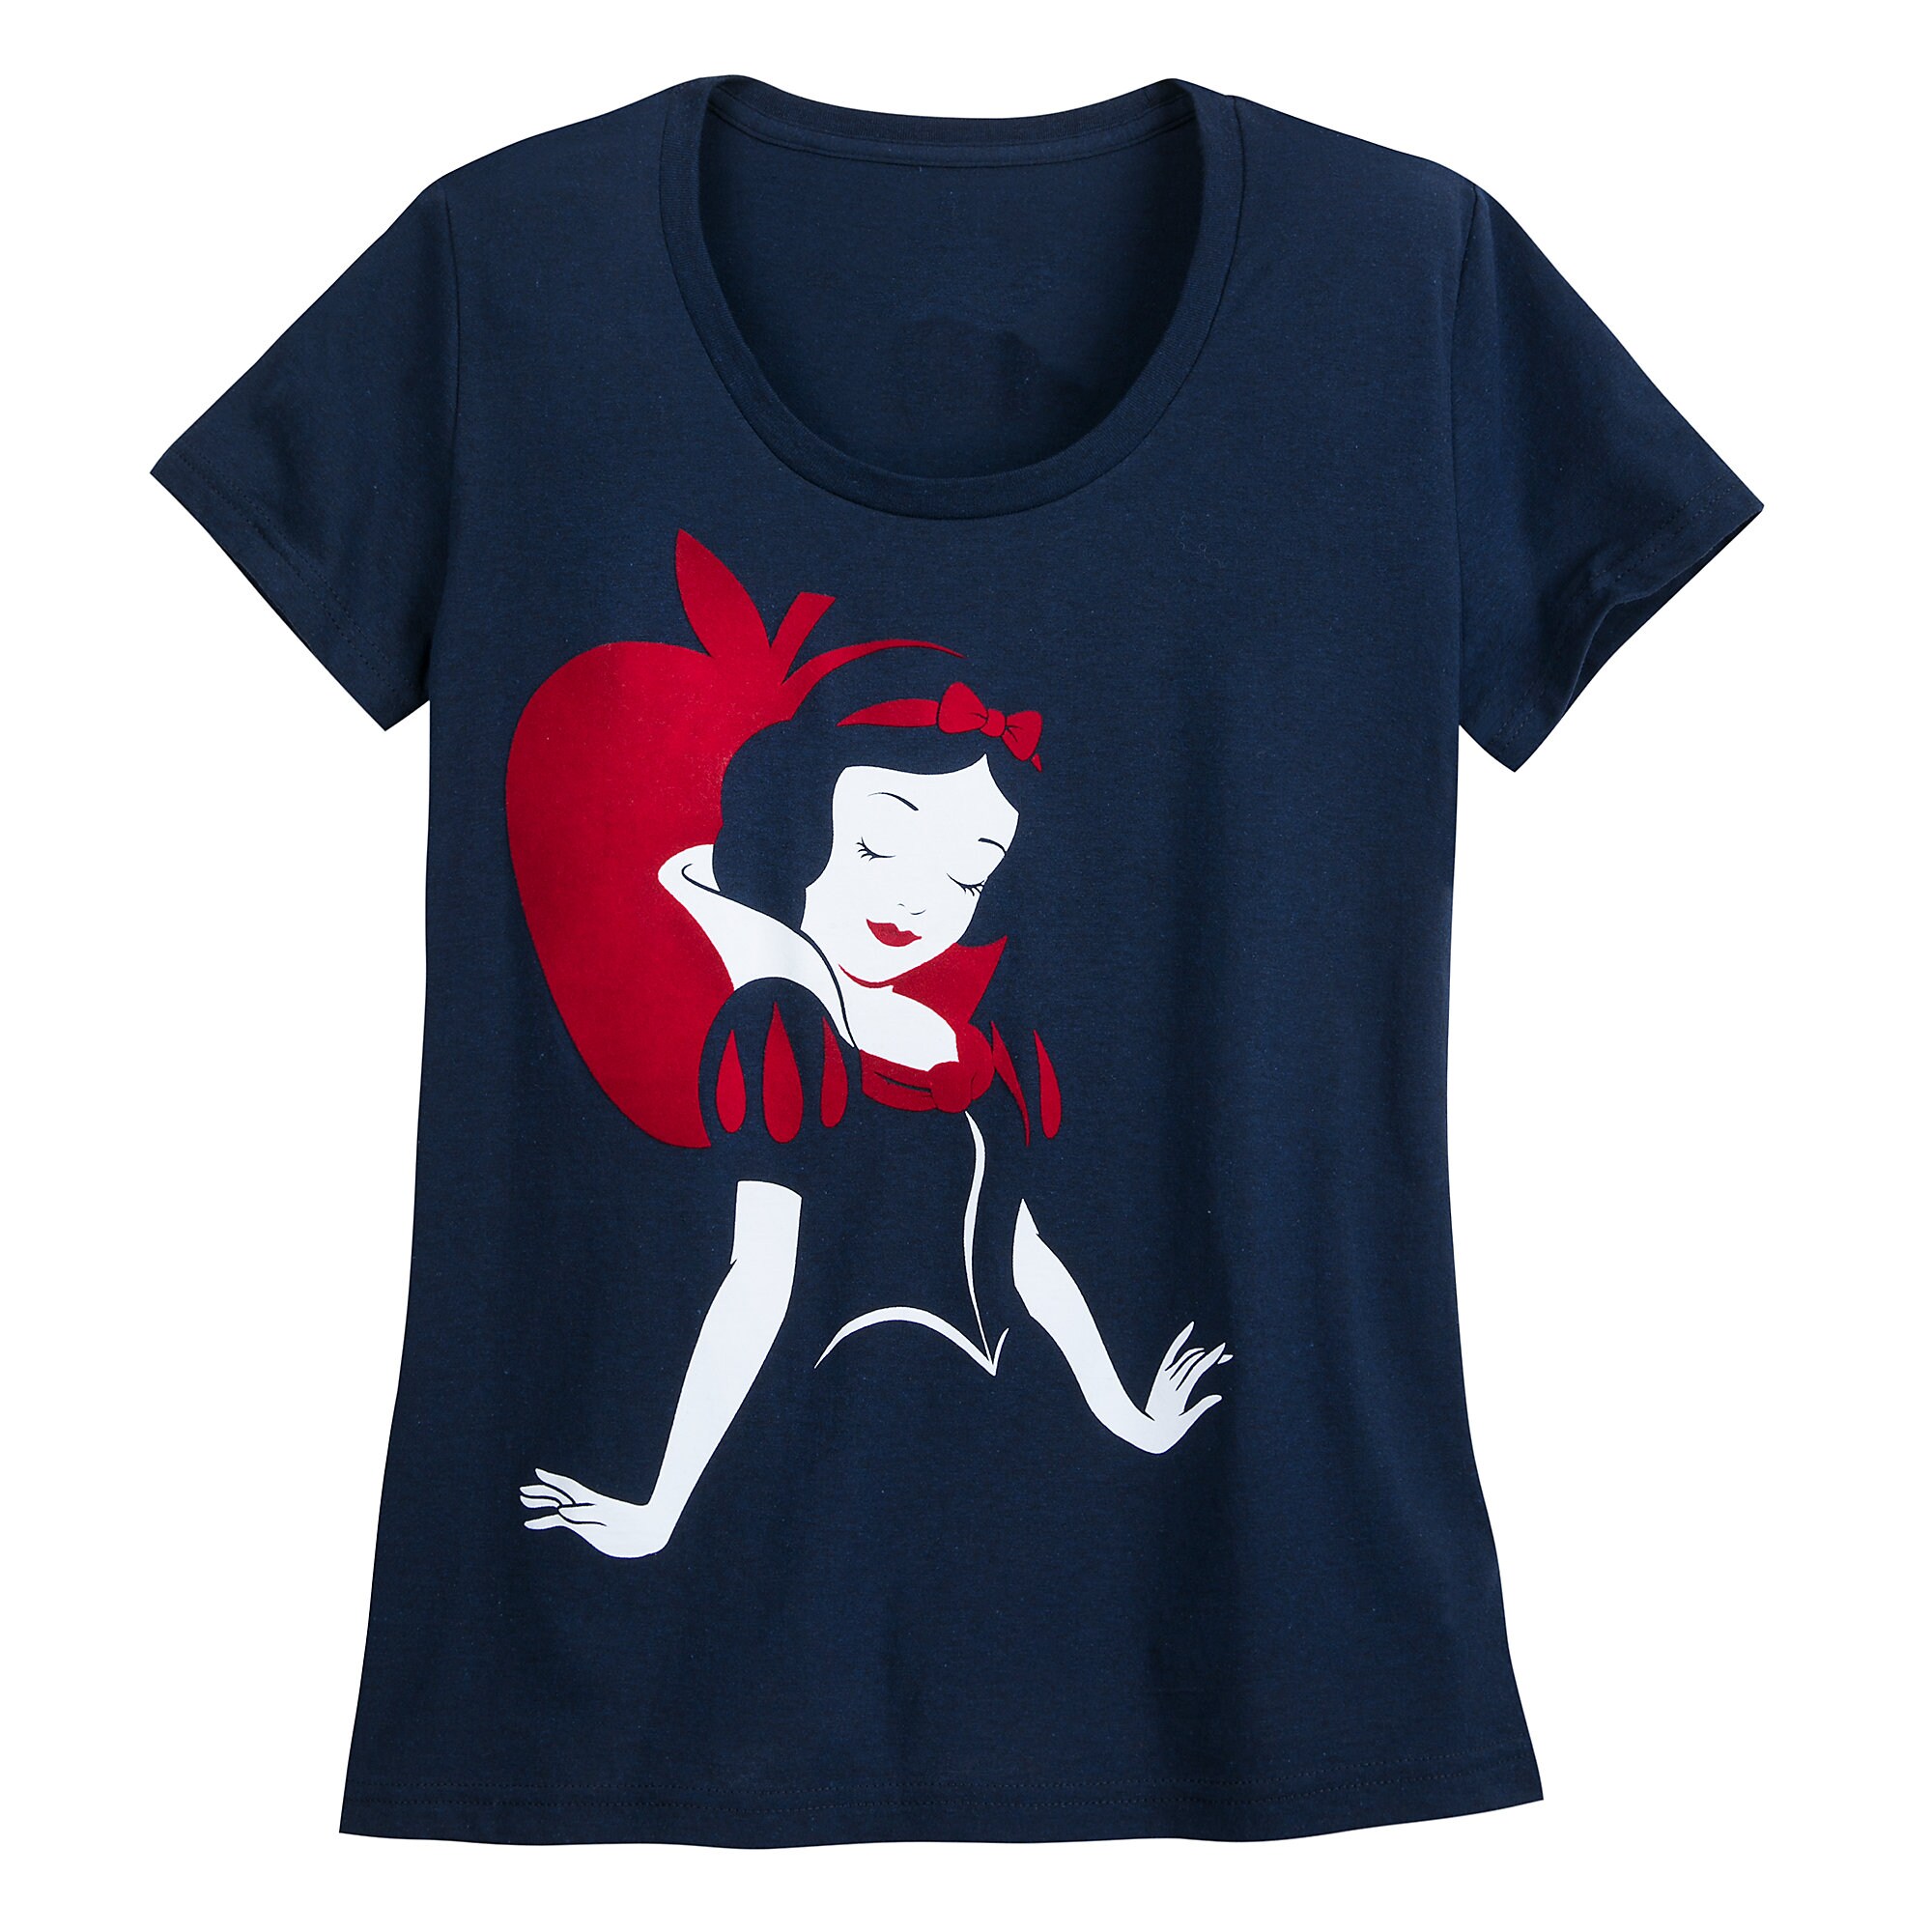 Snow White T-Shirt for Women